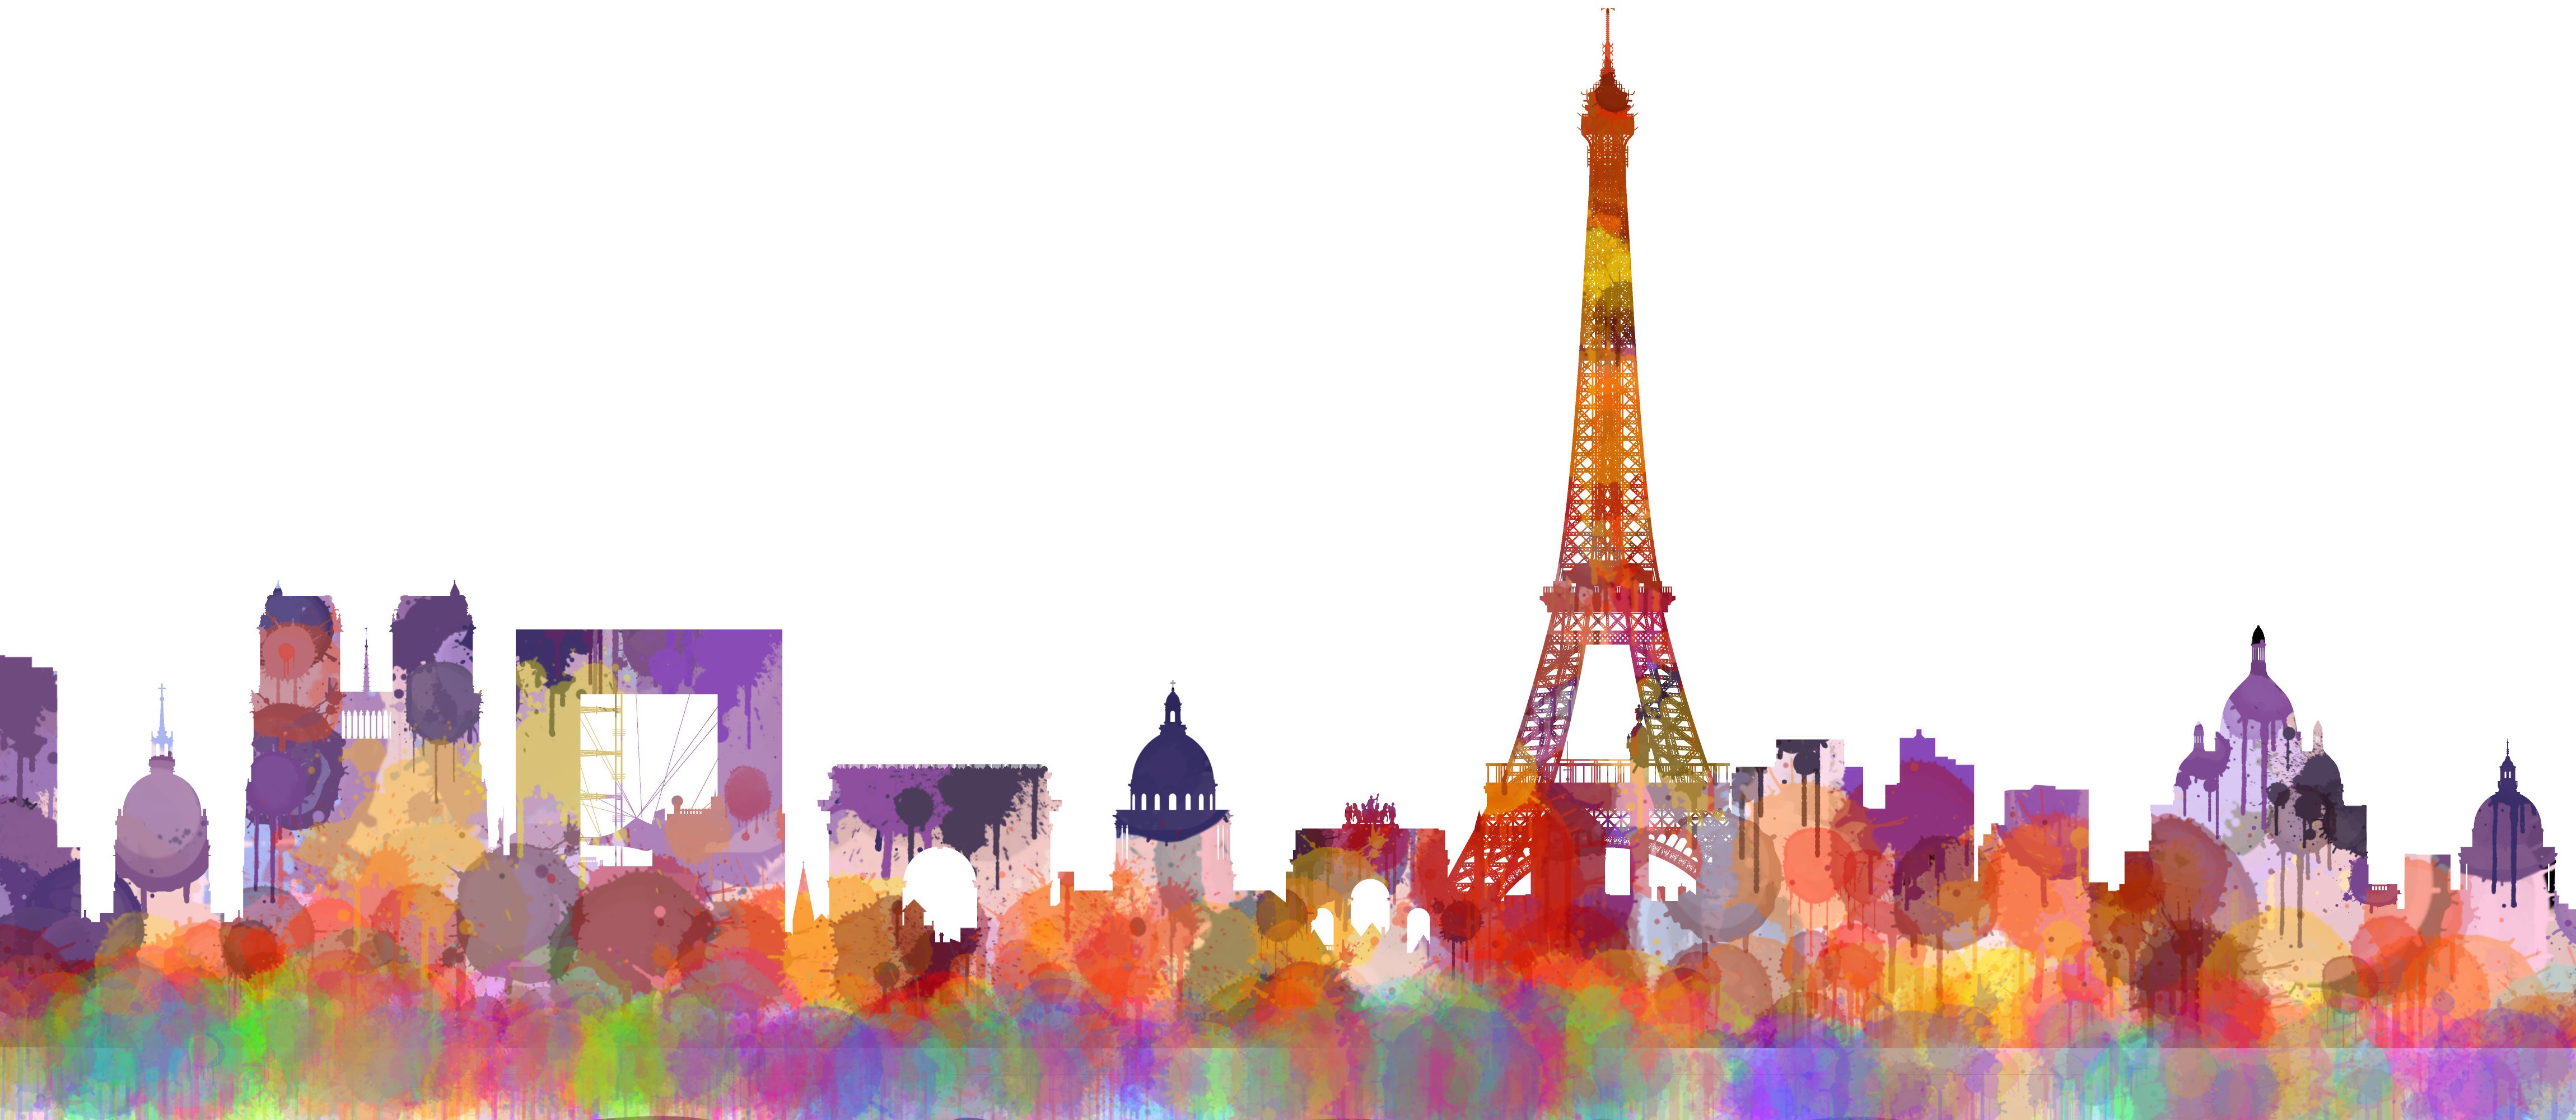 Paris Cityscape Skyline preview image.